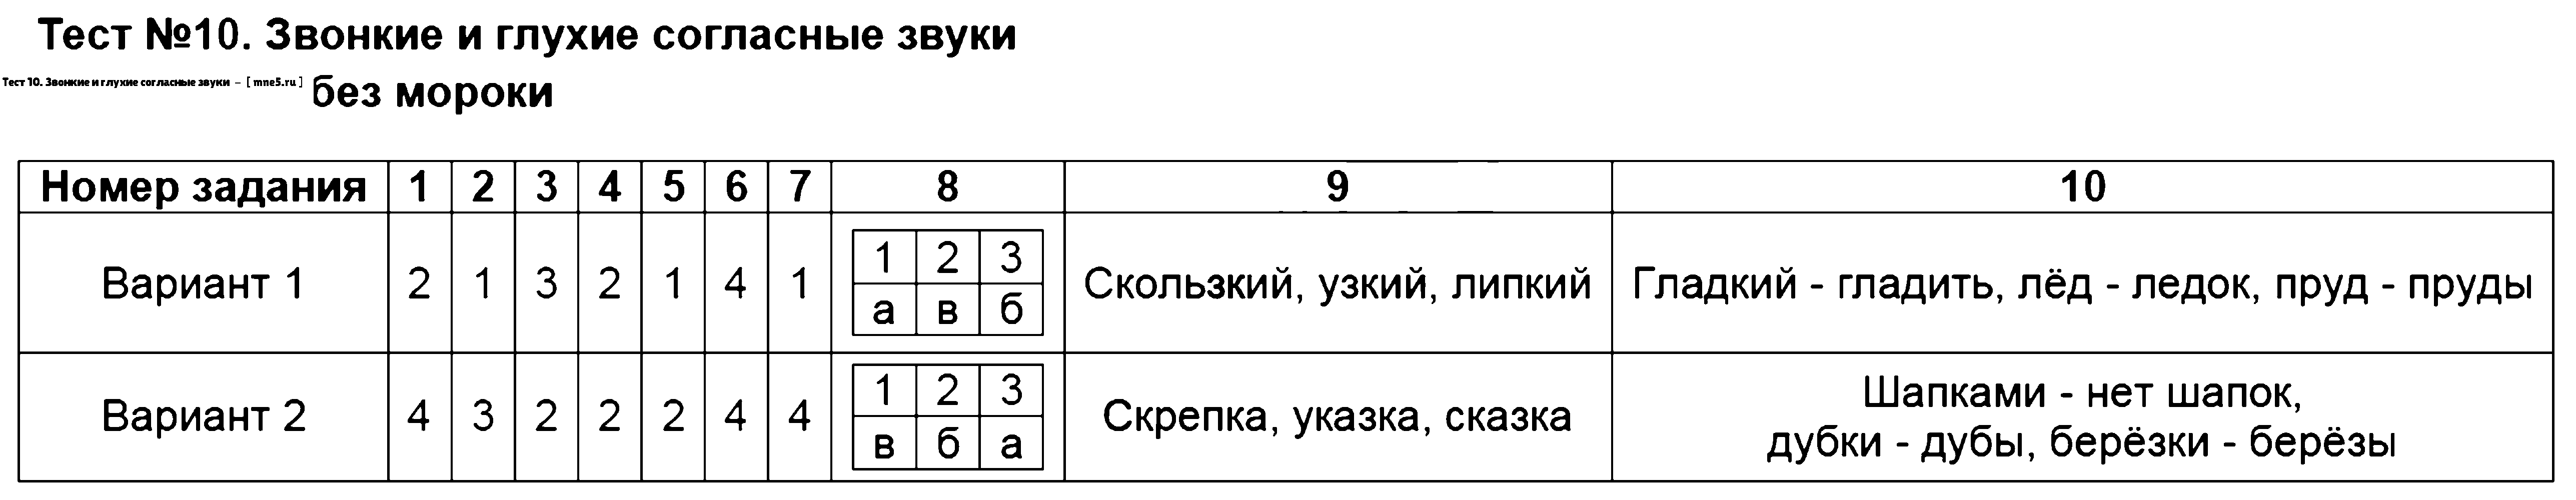 ГДЗ Русский язык 2 класс - Тест 10. Звонкие и глухие согласные звуки